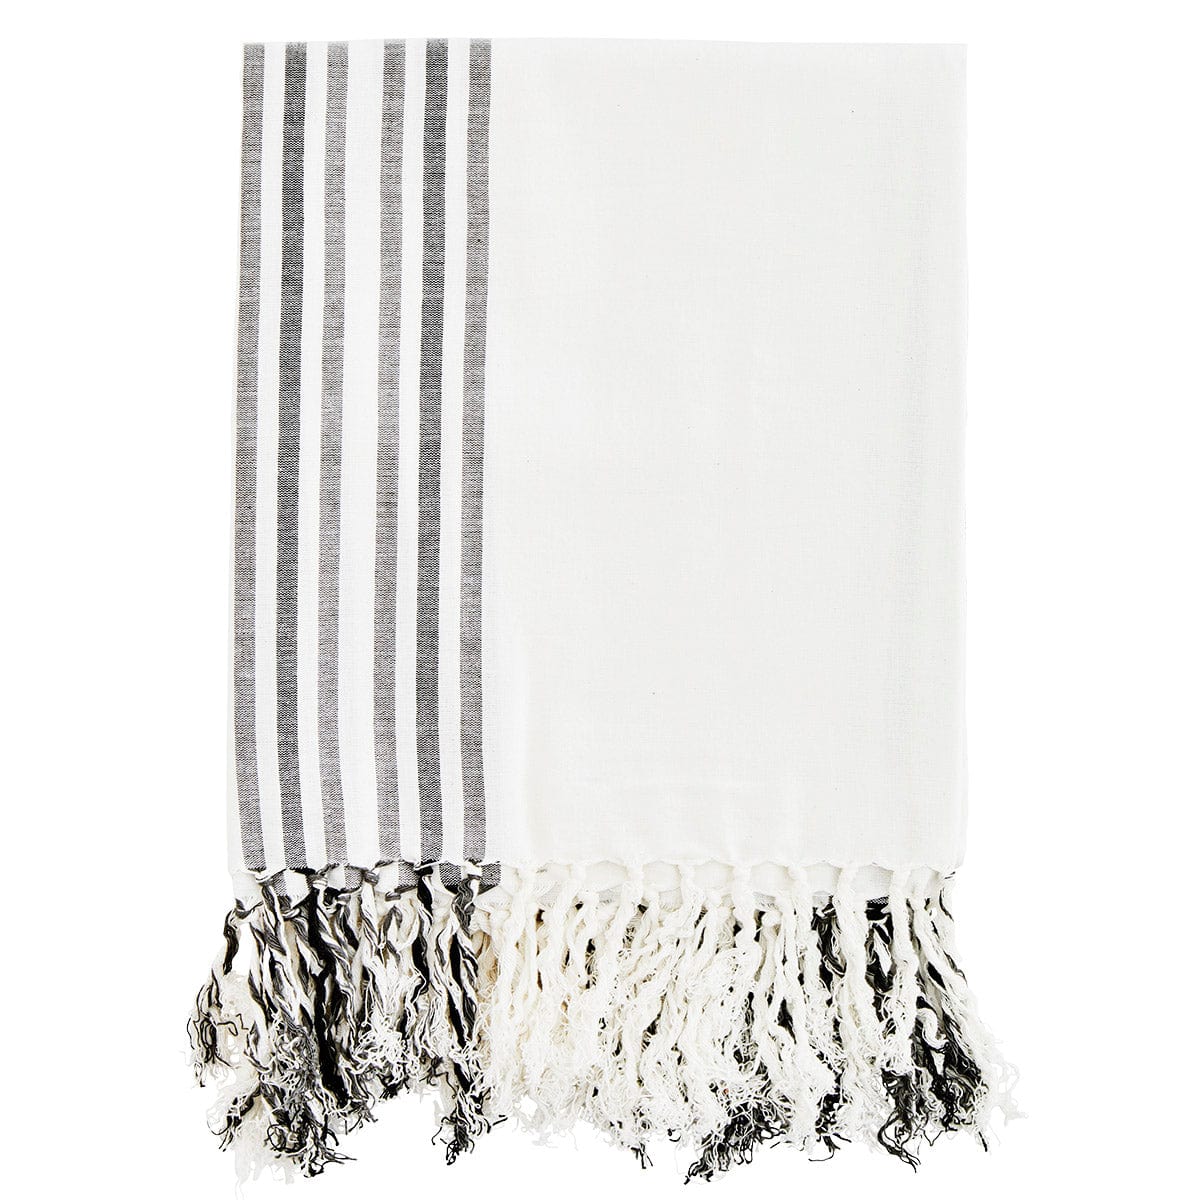 Deilig bomullshåndkle med frynser. Hamam håndklær tørker raskt, tar liten plass og er perfekt i strandvesken eller piknik kurven. Off-white og grått. 